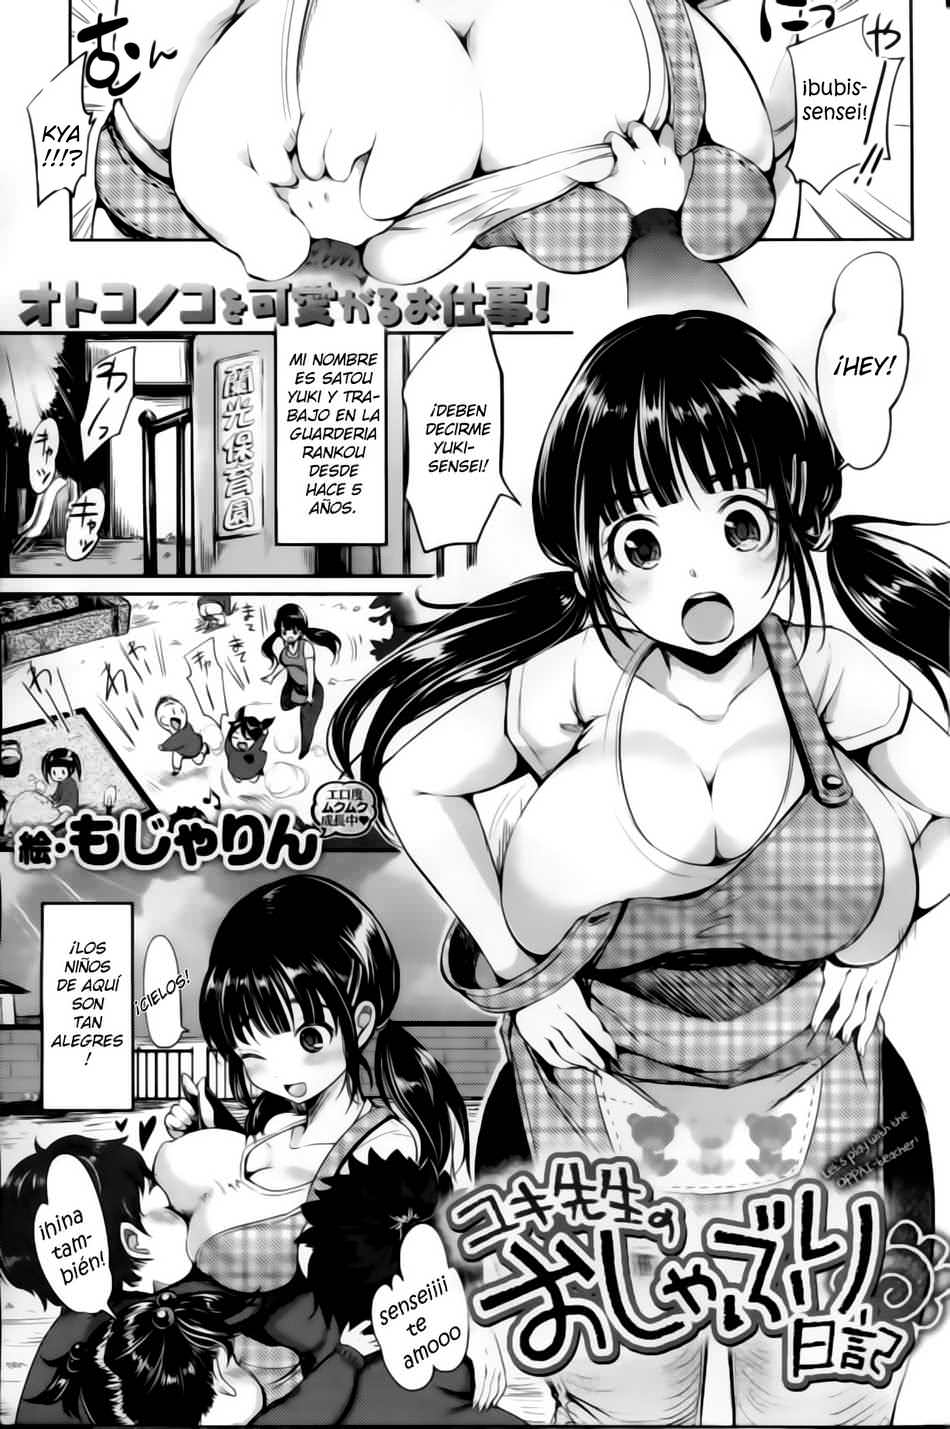 La jornada de trabajo de Yuki-sensei - Page #1